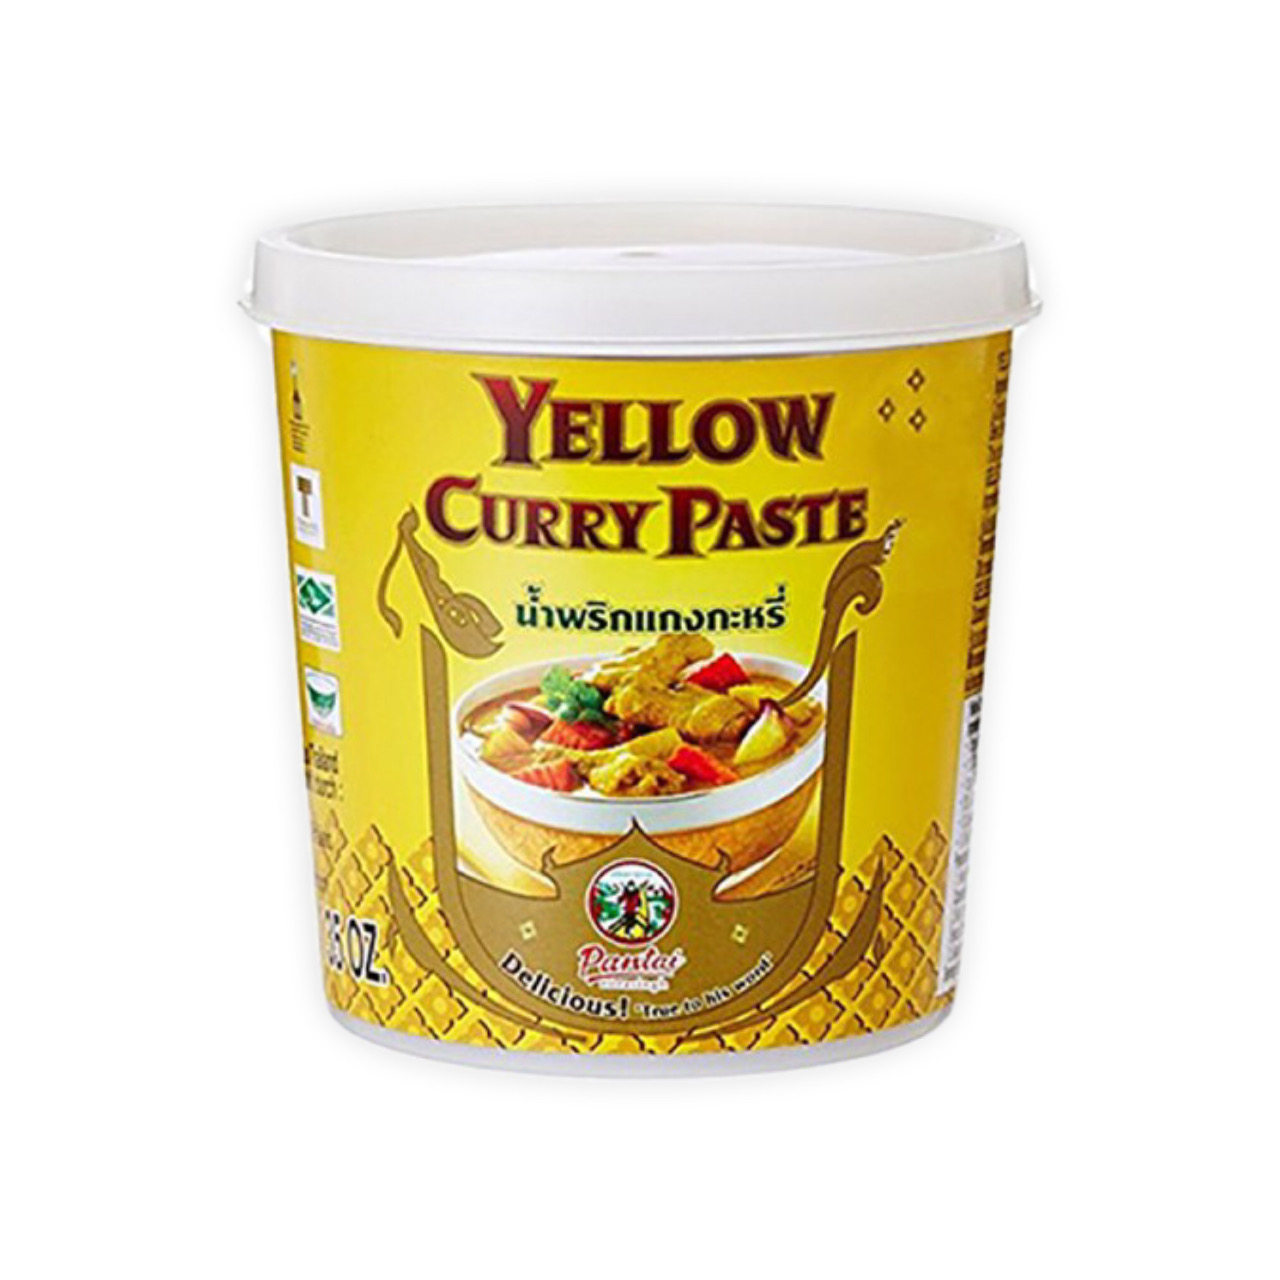 رب کاری زرد ( کاری پیست ) 400 گرم سوپر شف – super chef Yellow curry paste